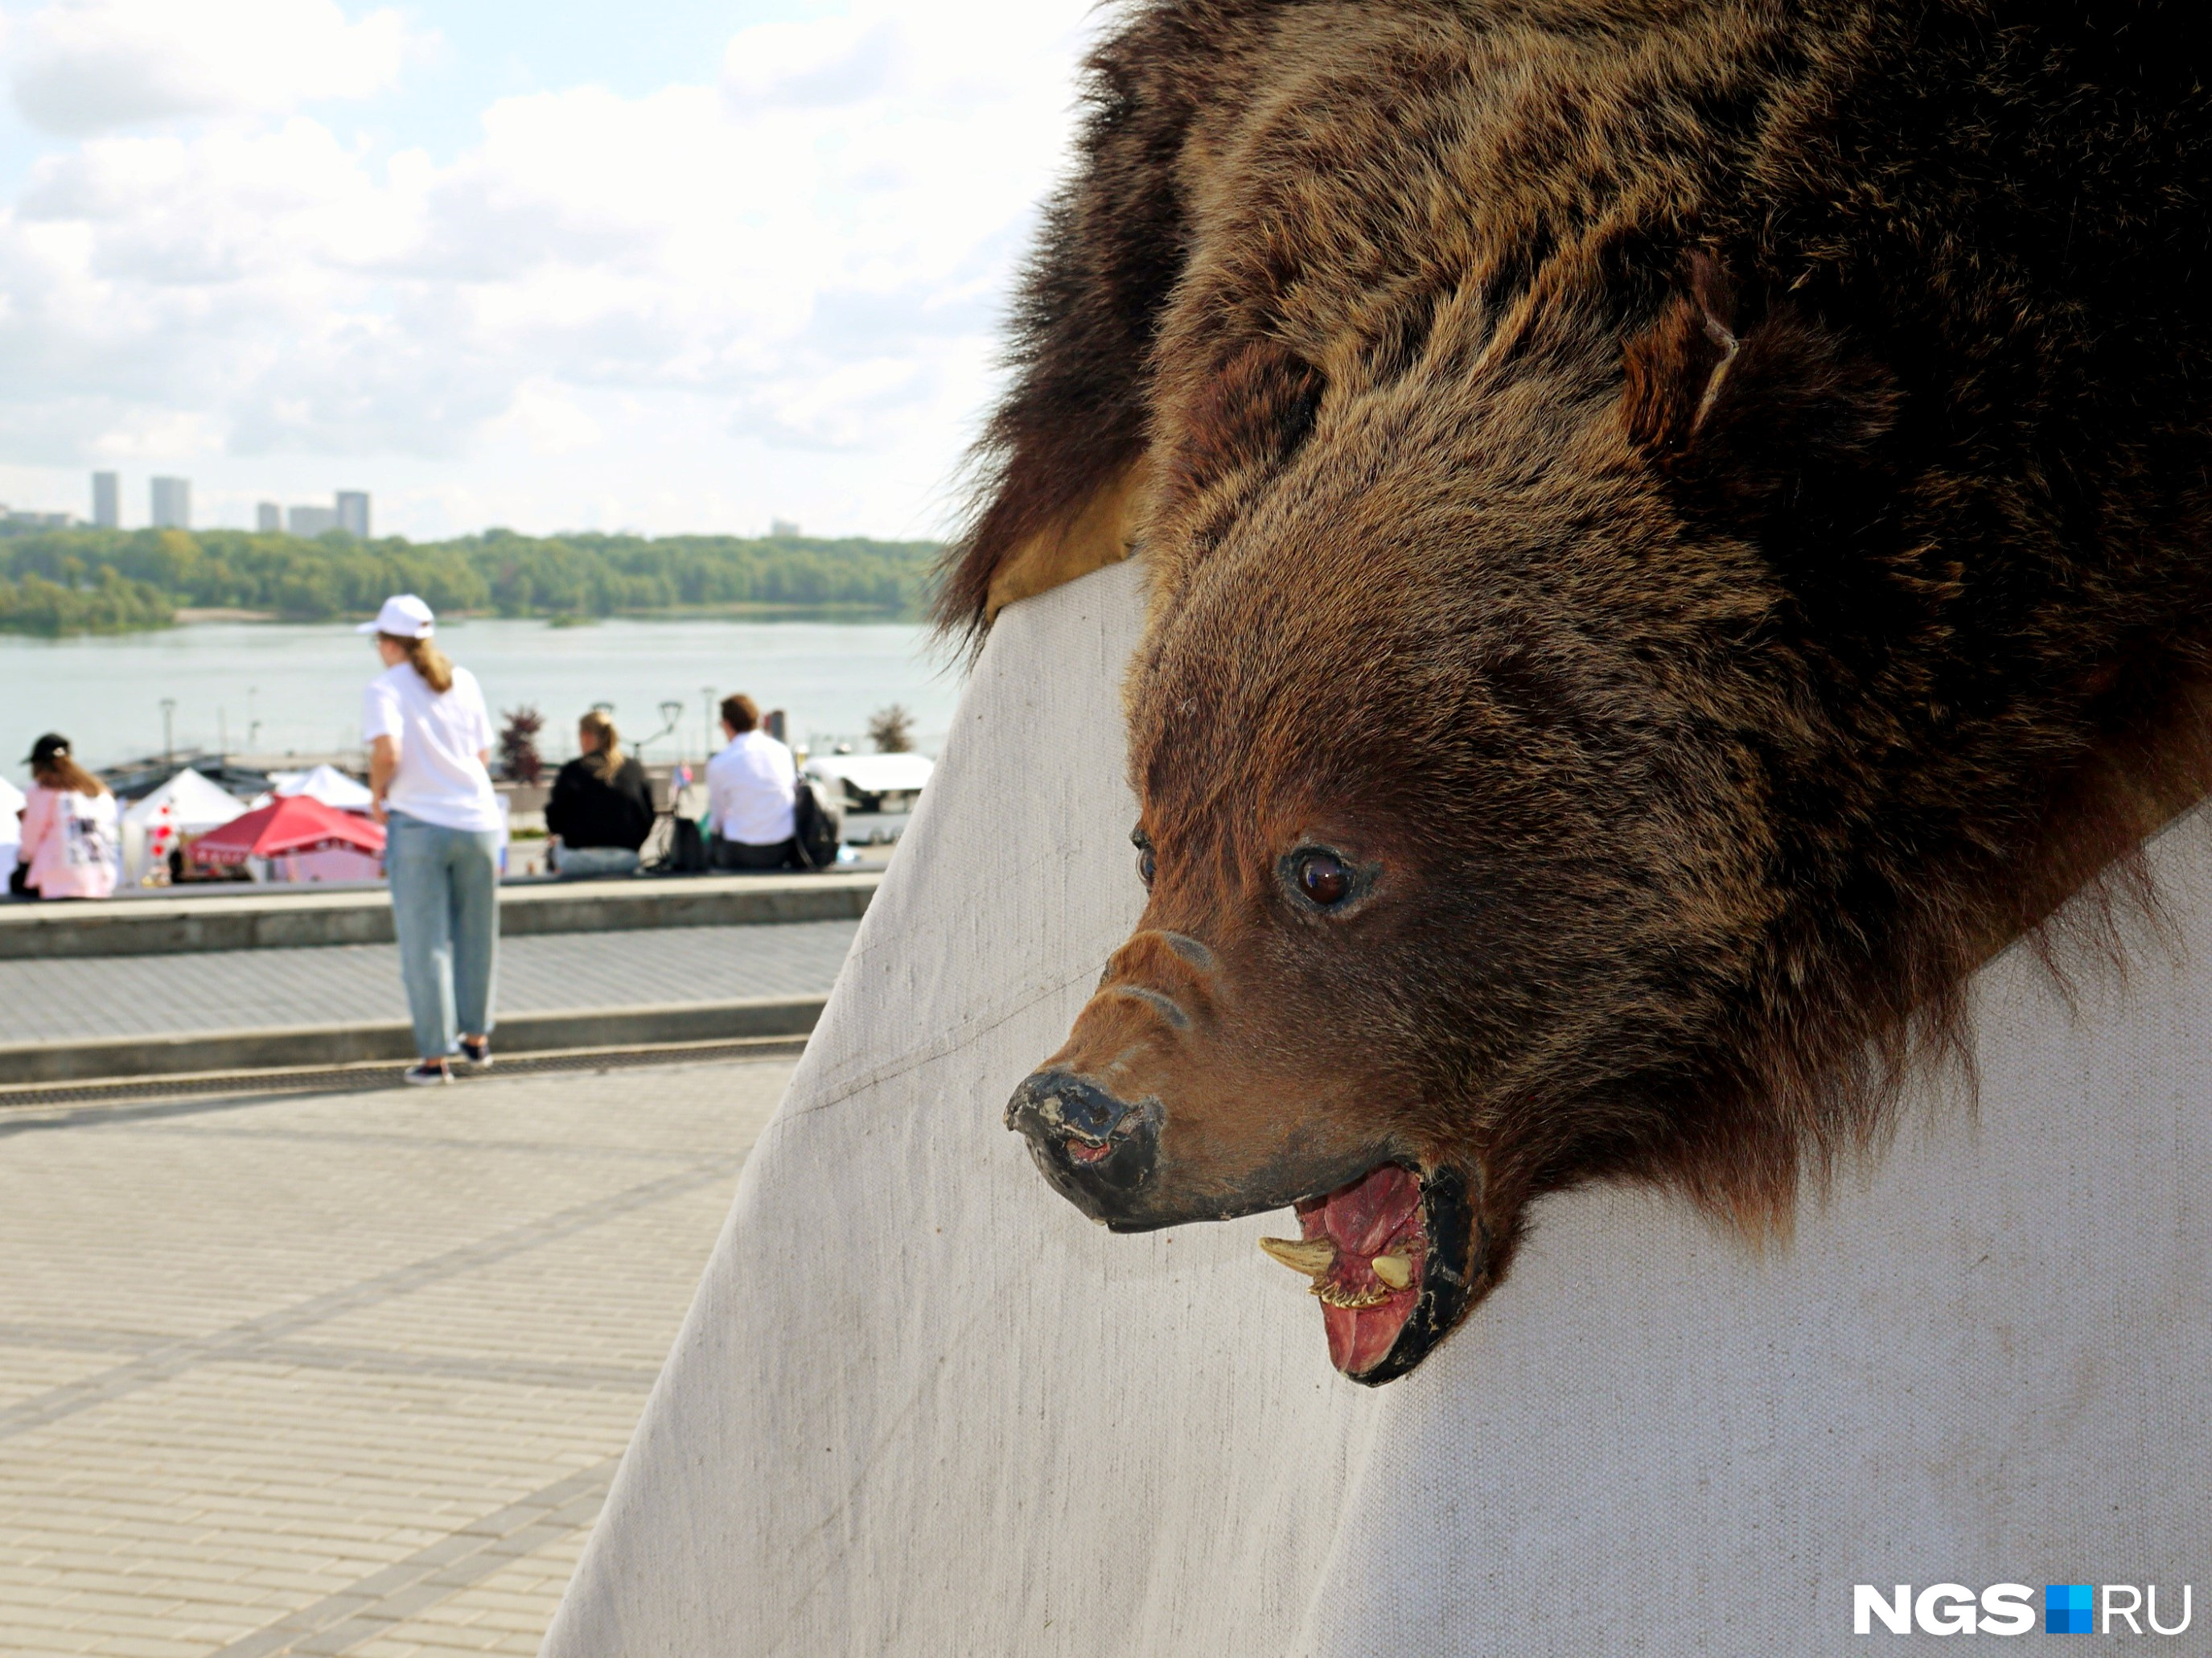 Главную идею сибирской кухни на фестивале олицетворяют шкуры медведей